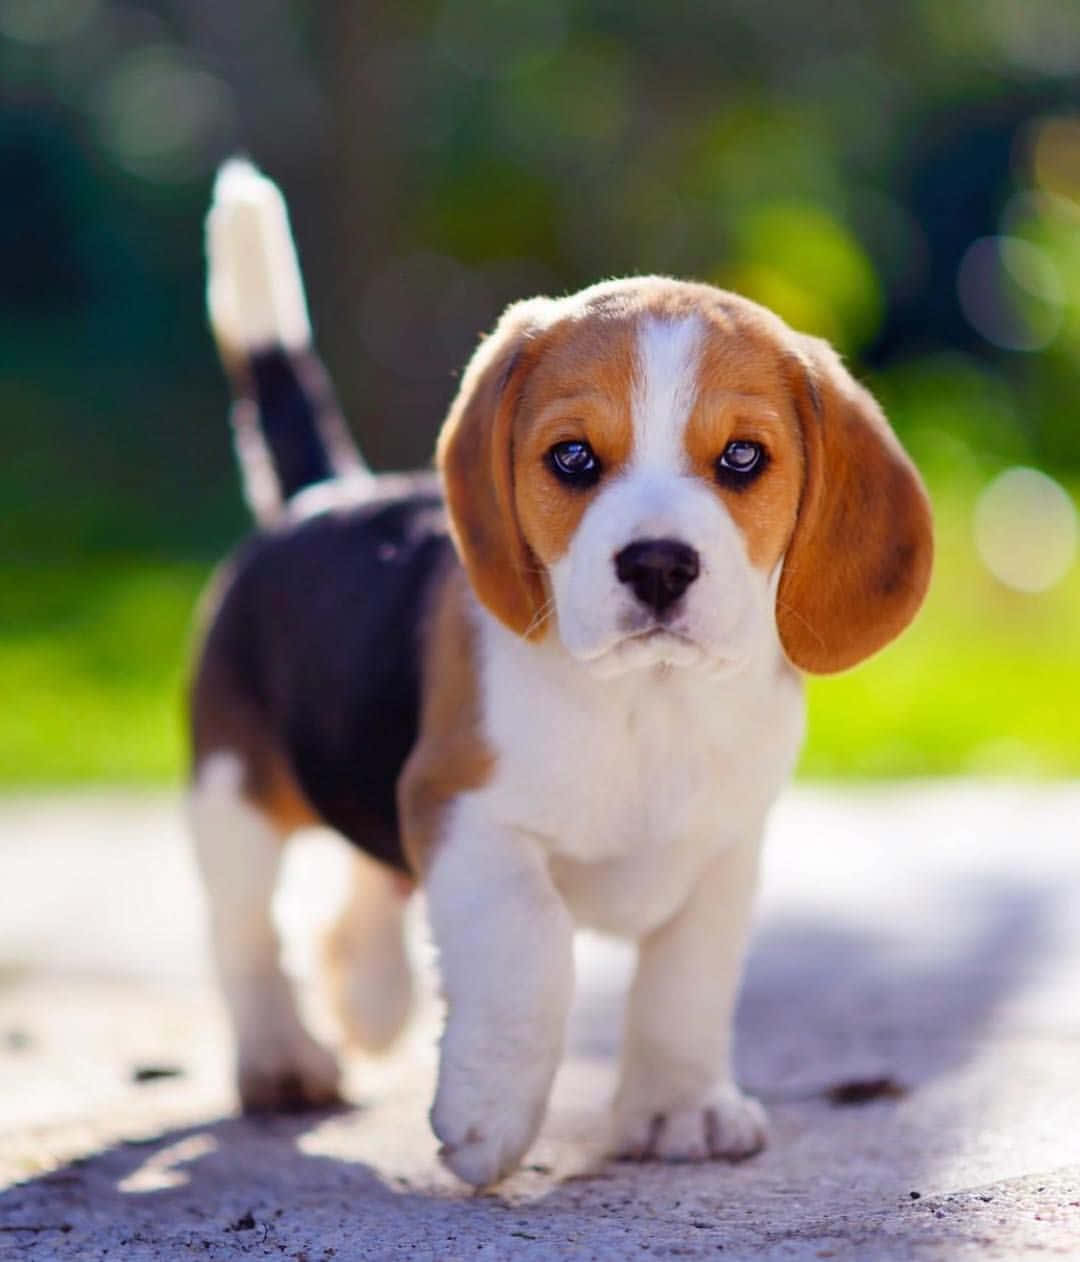 A cute white and tan Beagle puppy